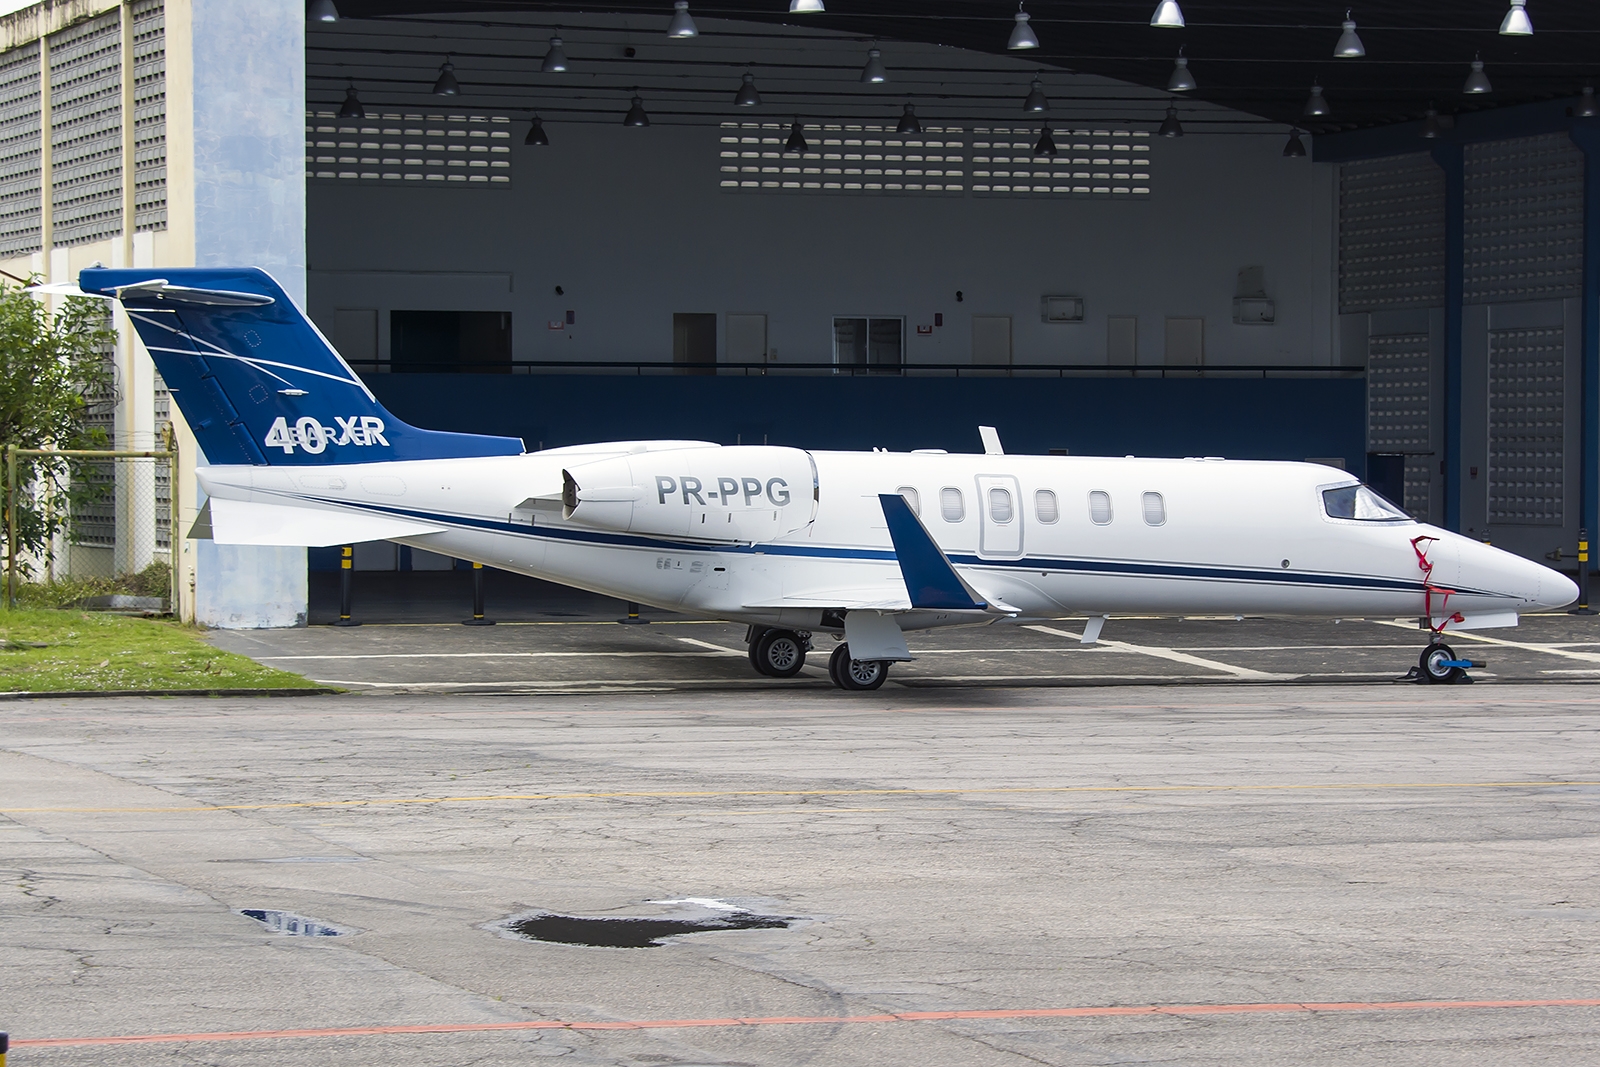 PR-PPG - Bombardier Learjet 40XR